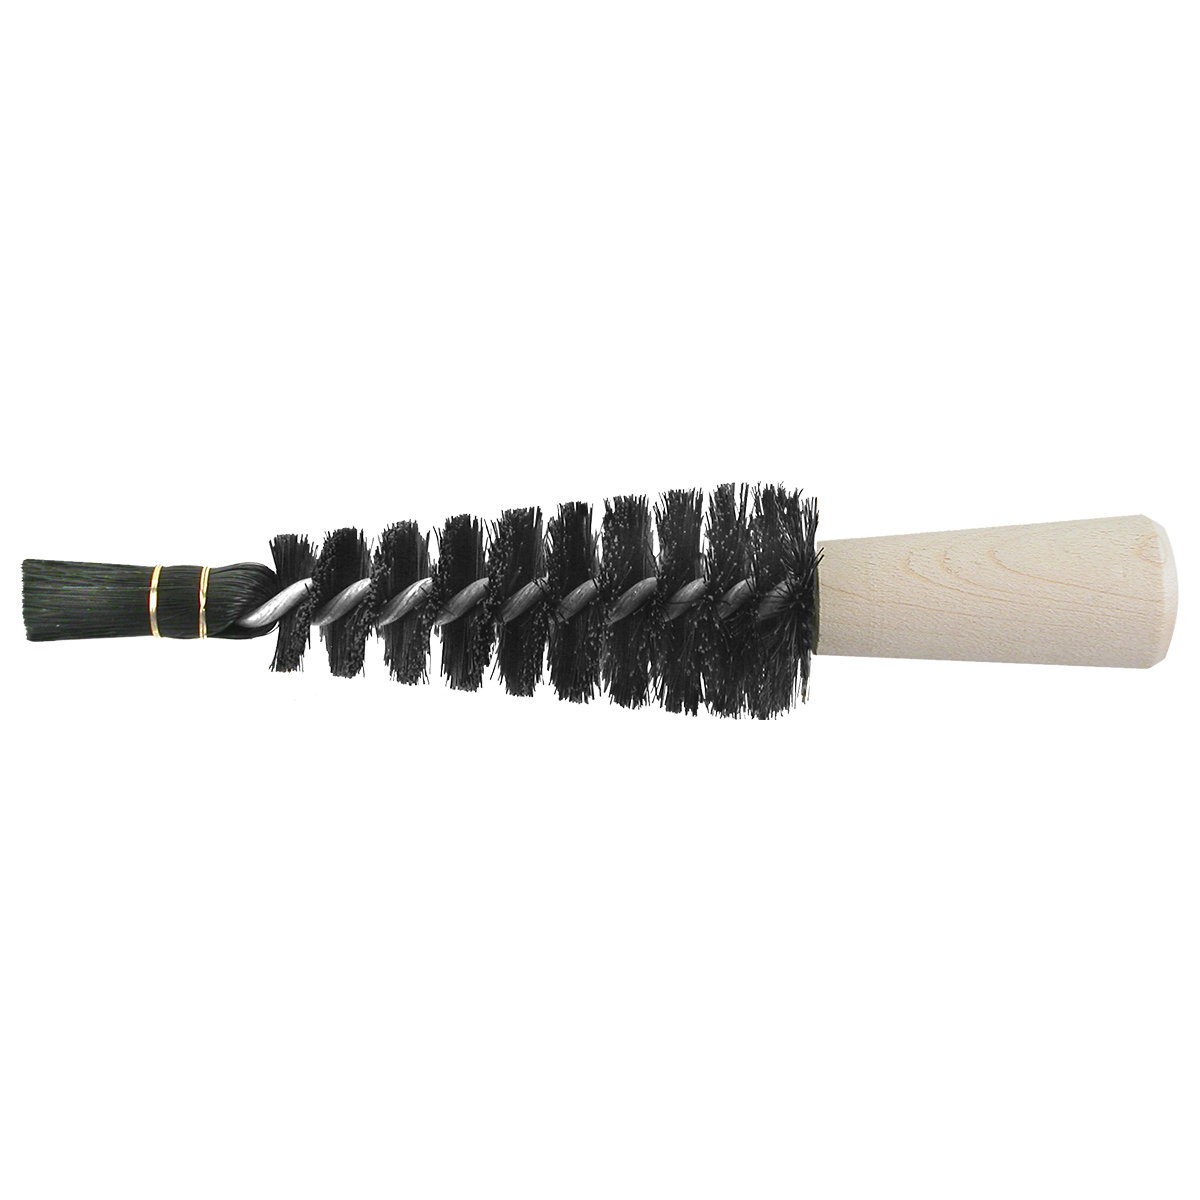 Brosses coniques avec poils noirs longueur 160 mm